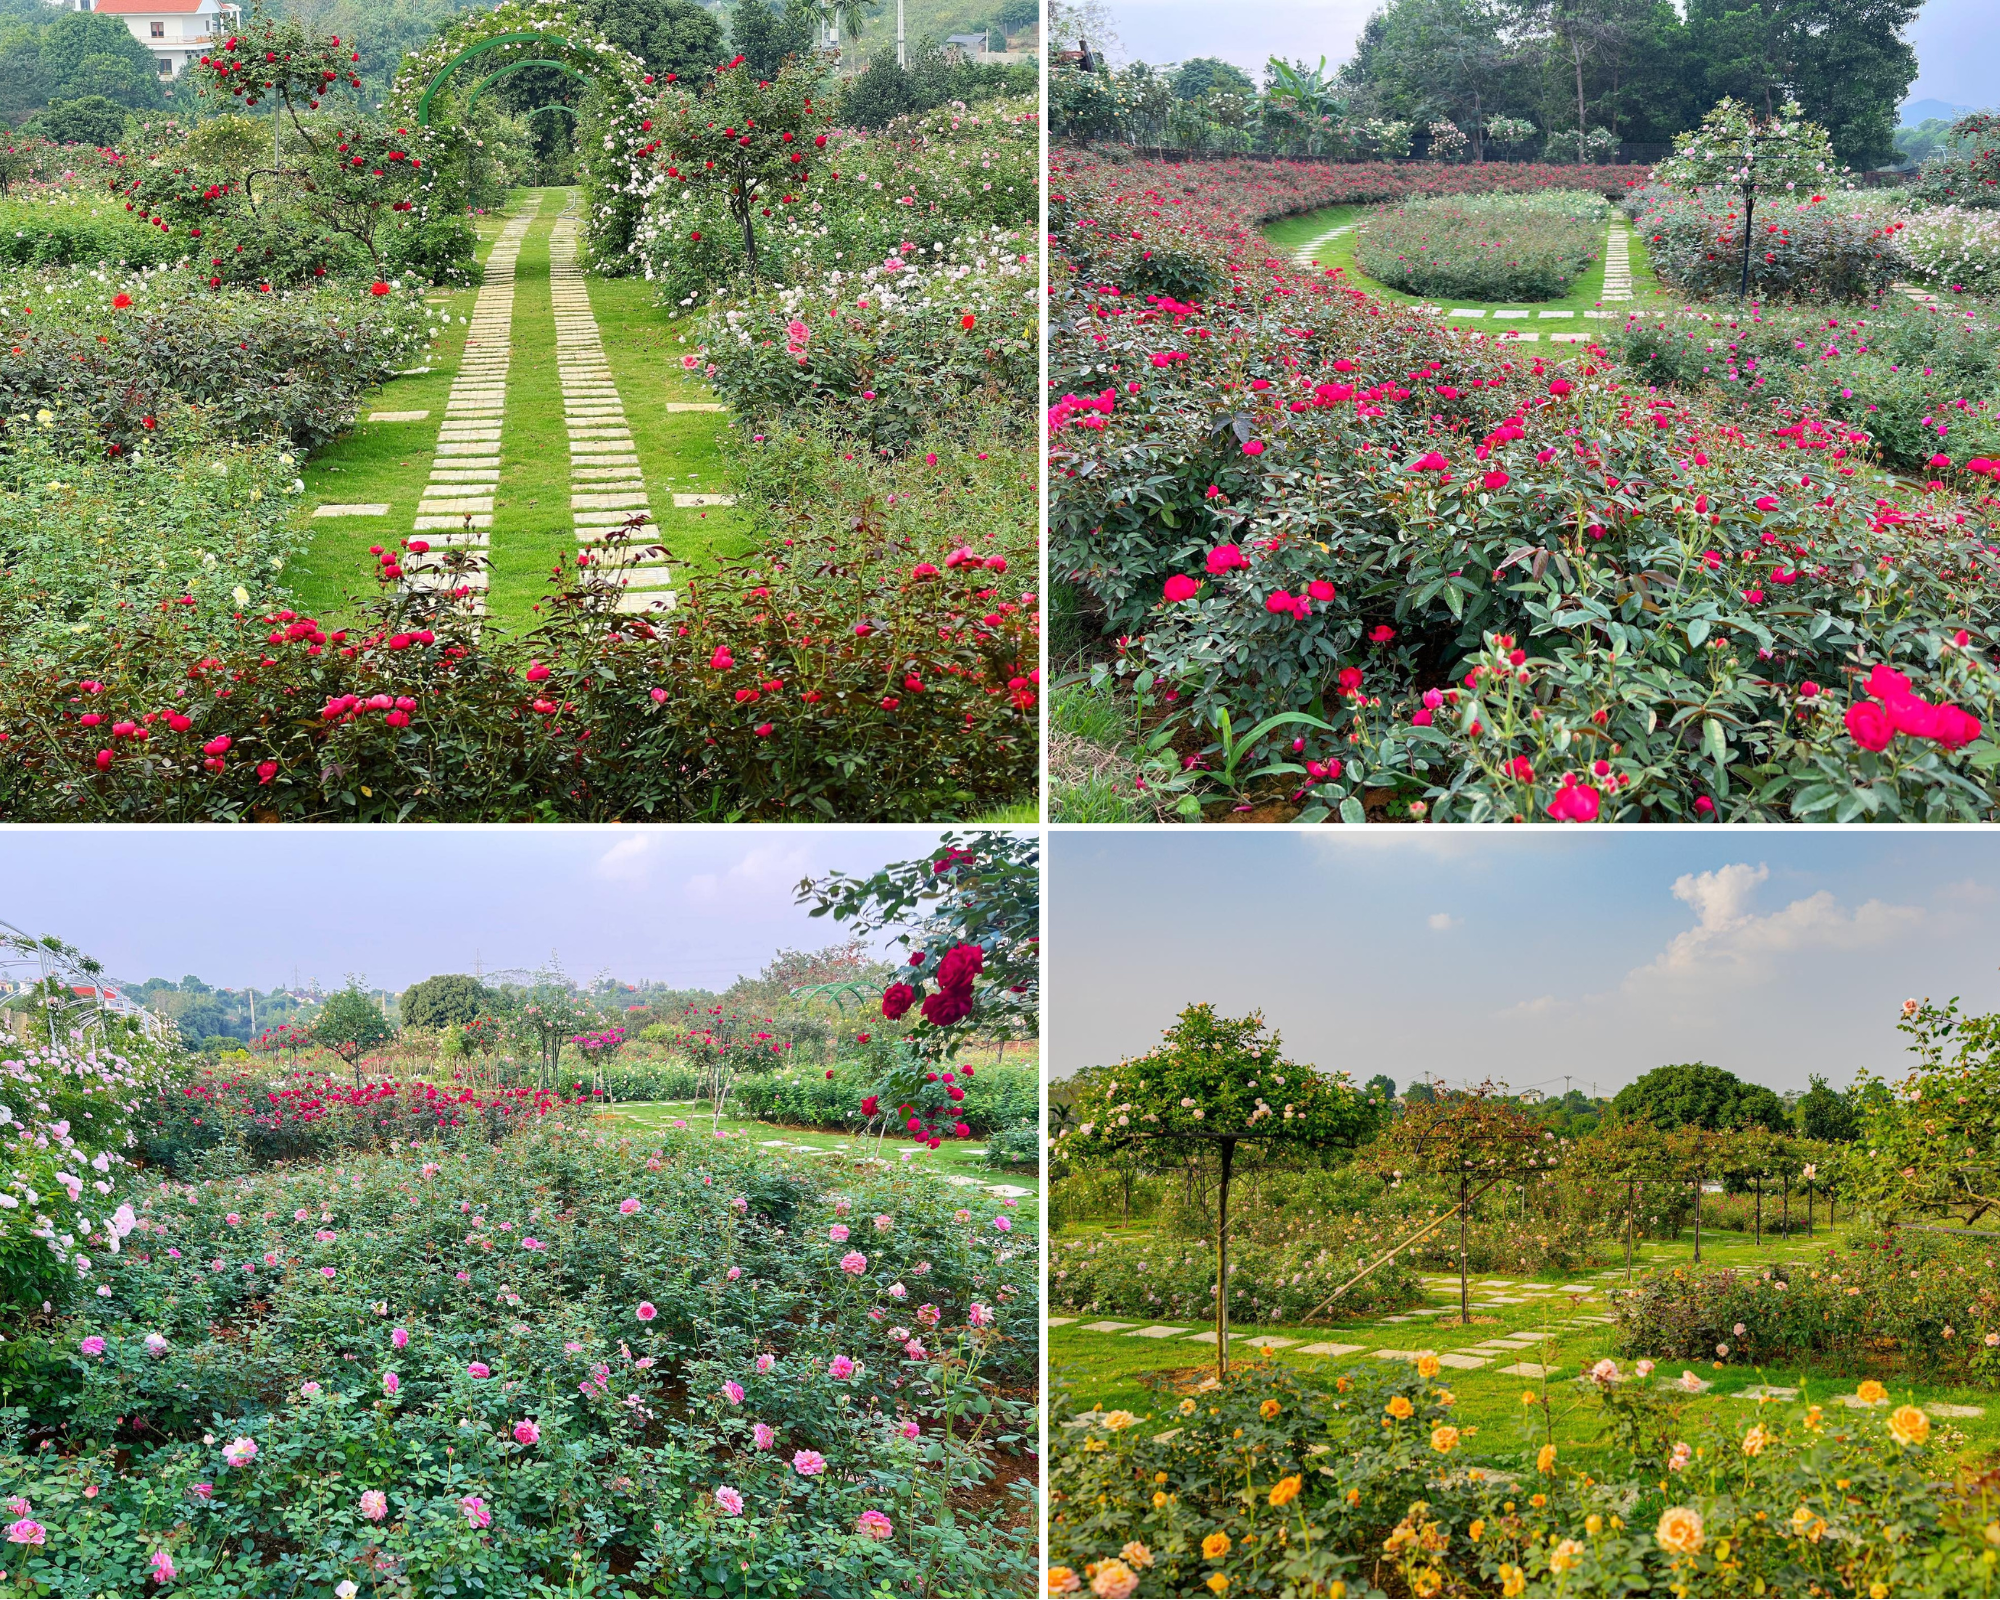 Mùng 3 Tết đến thăm vườn hồng rộng 6.000m² của người phụ nữ Hà Nội - Ảnh 2.